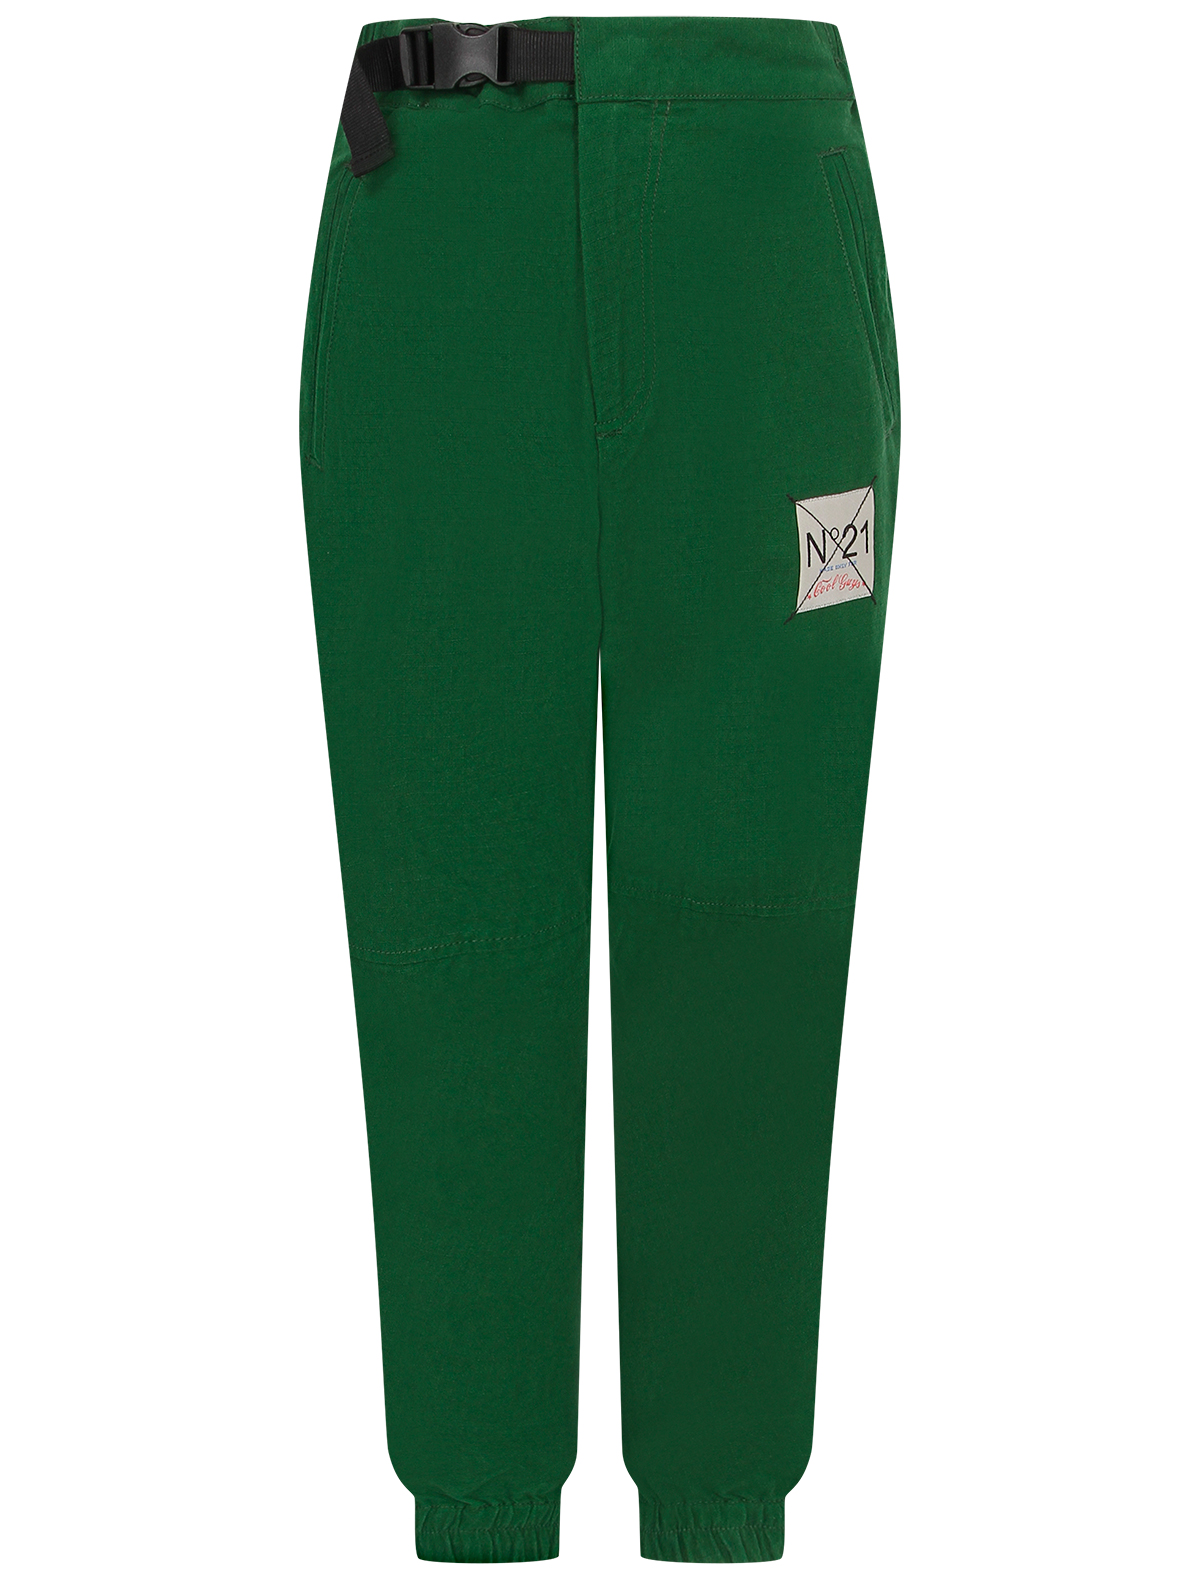 брюки n21 для мальчика, зеленые